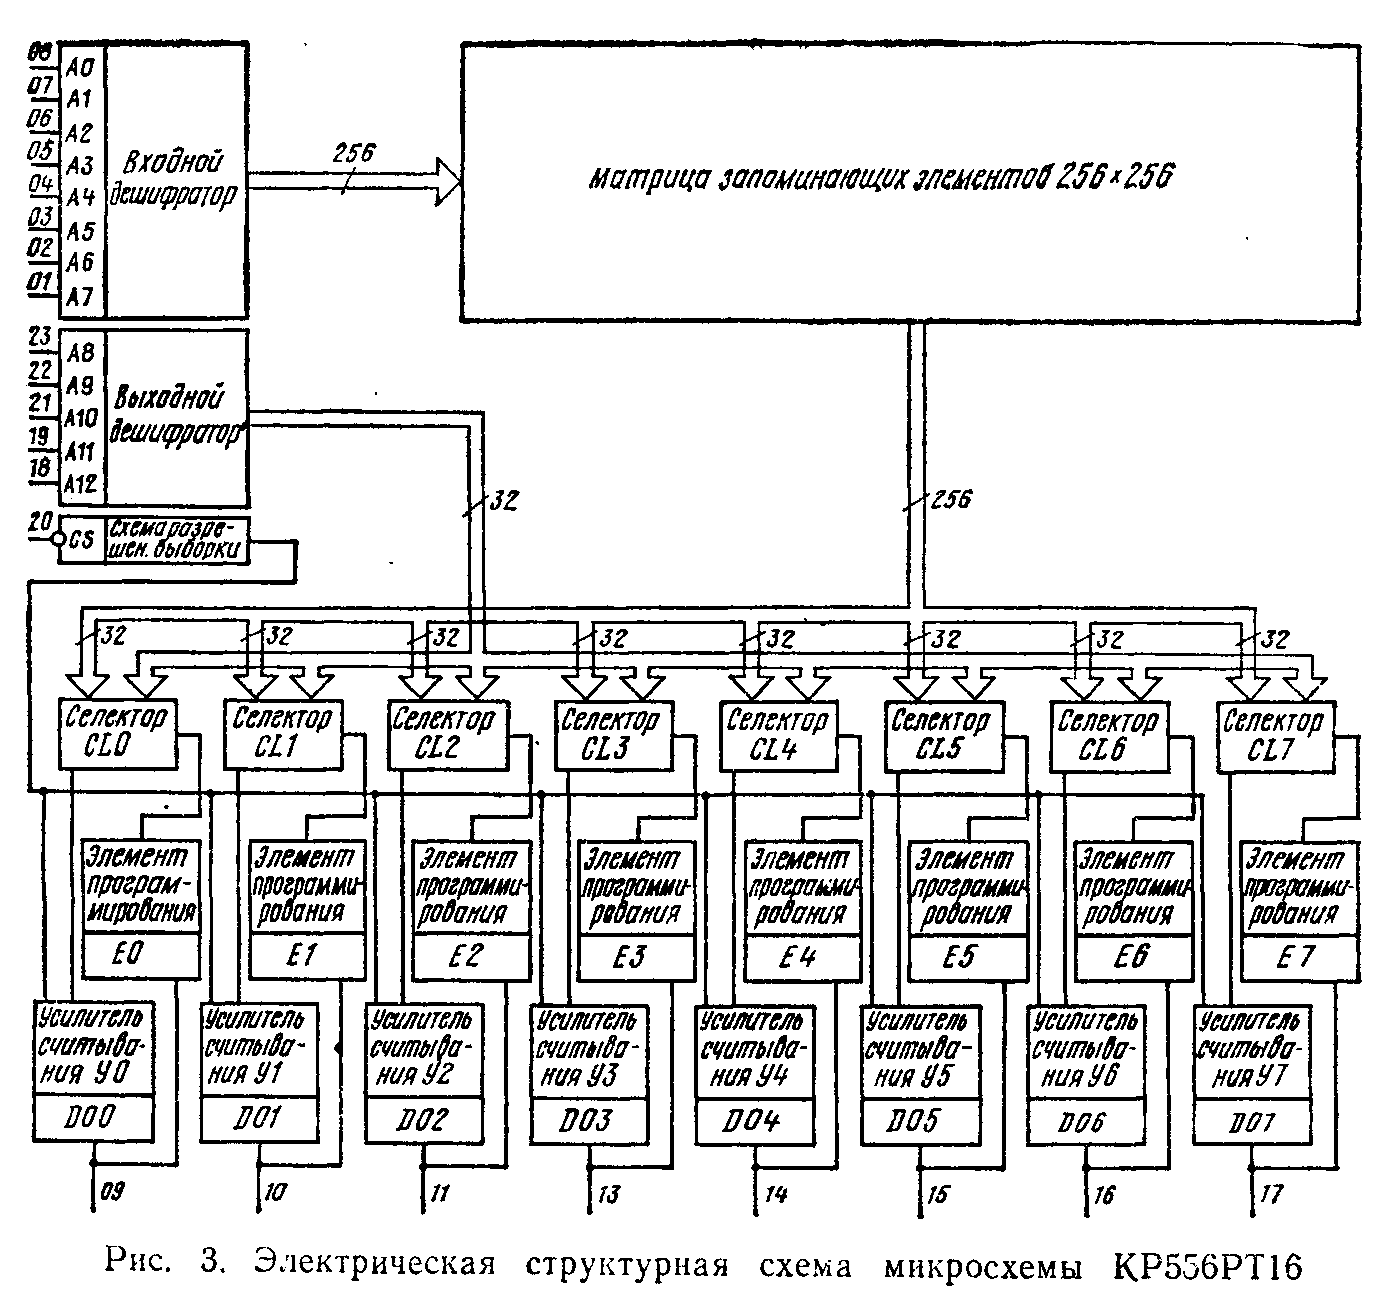 Микропроцессорные средства и системы 1987 №3 - Справочная информация .